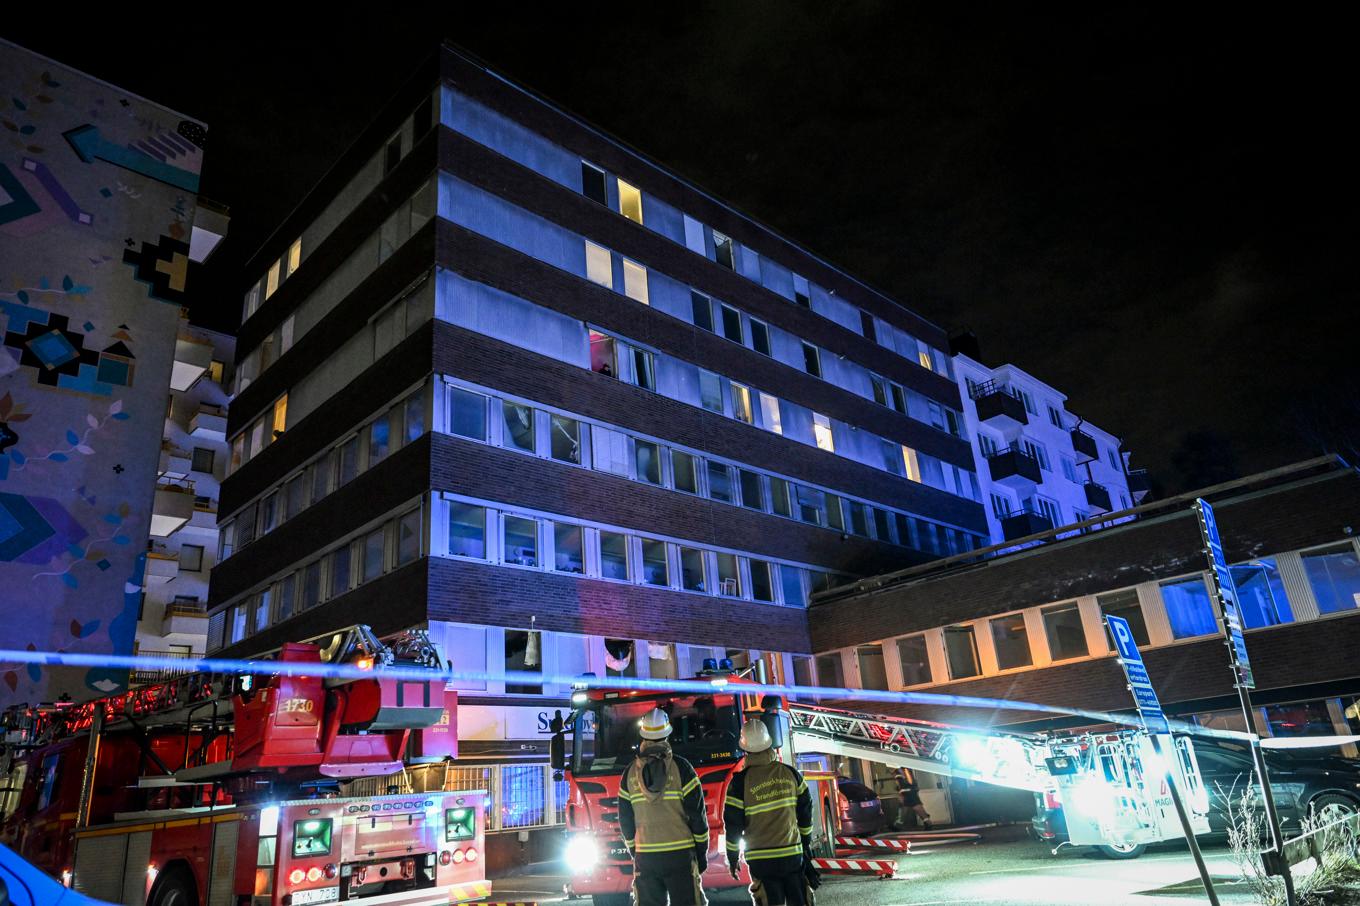 Räddningstjänsten på plats där en brand utbröt i ett flerfamiljshus norr om Stockholm. Foto: Fredrik Sandberg/TT